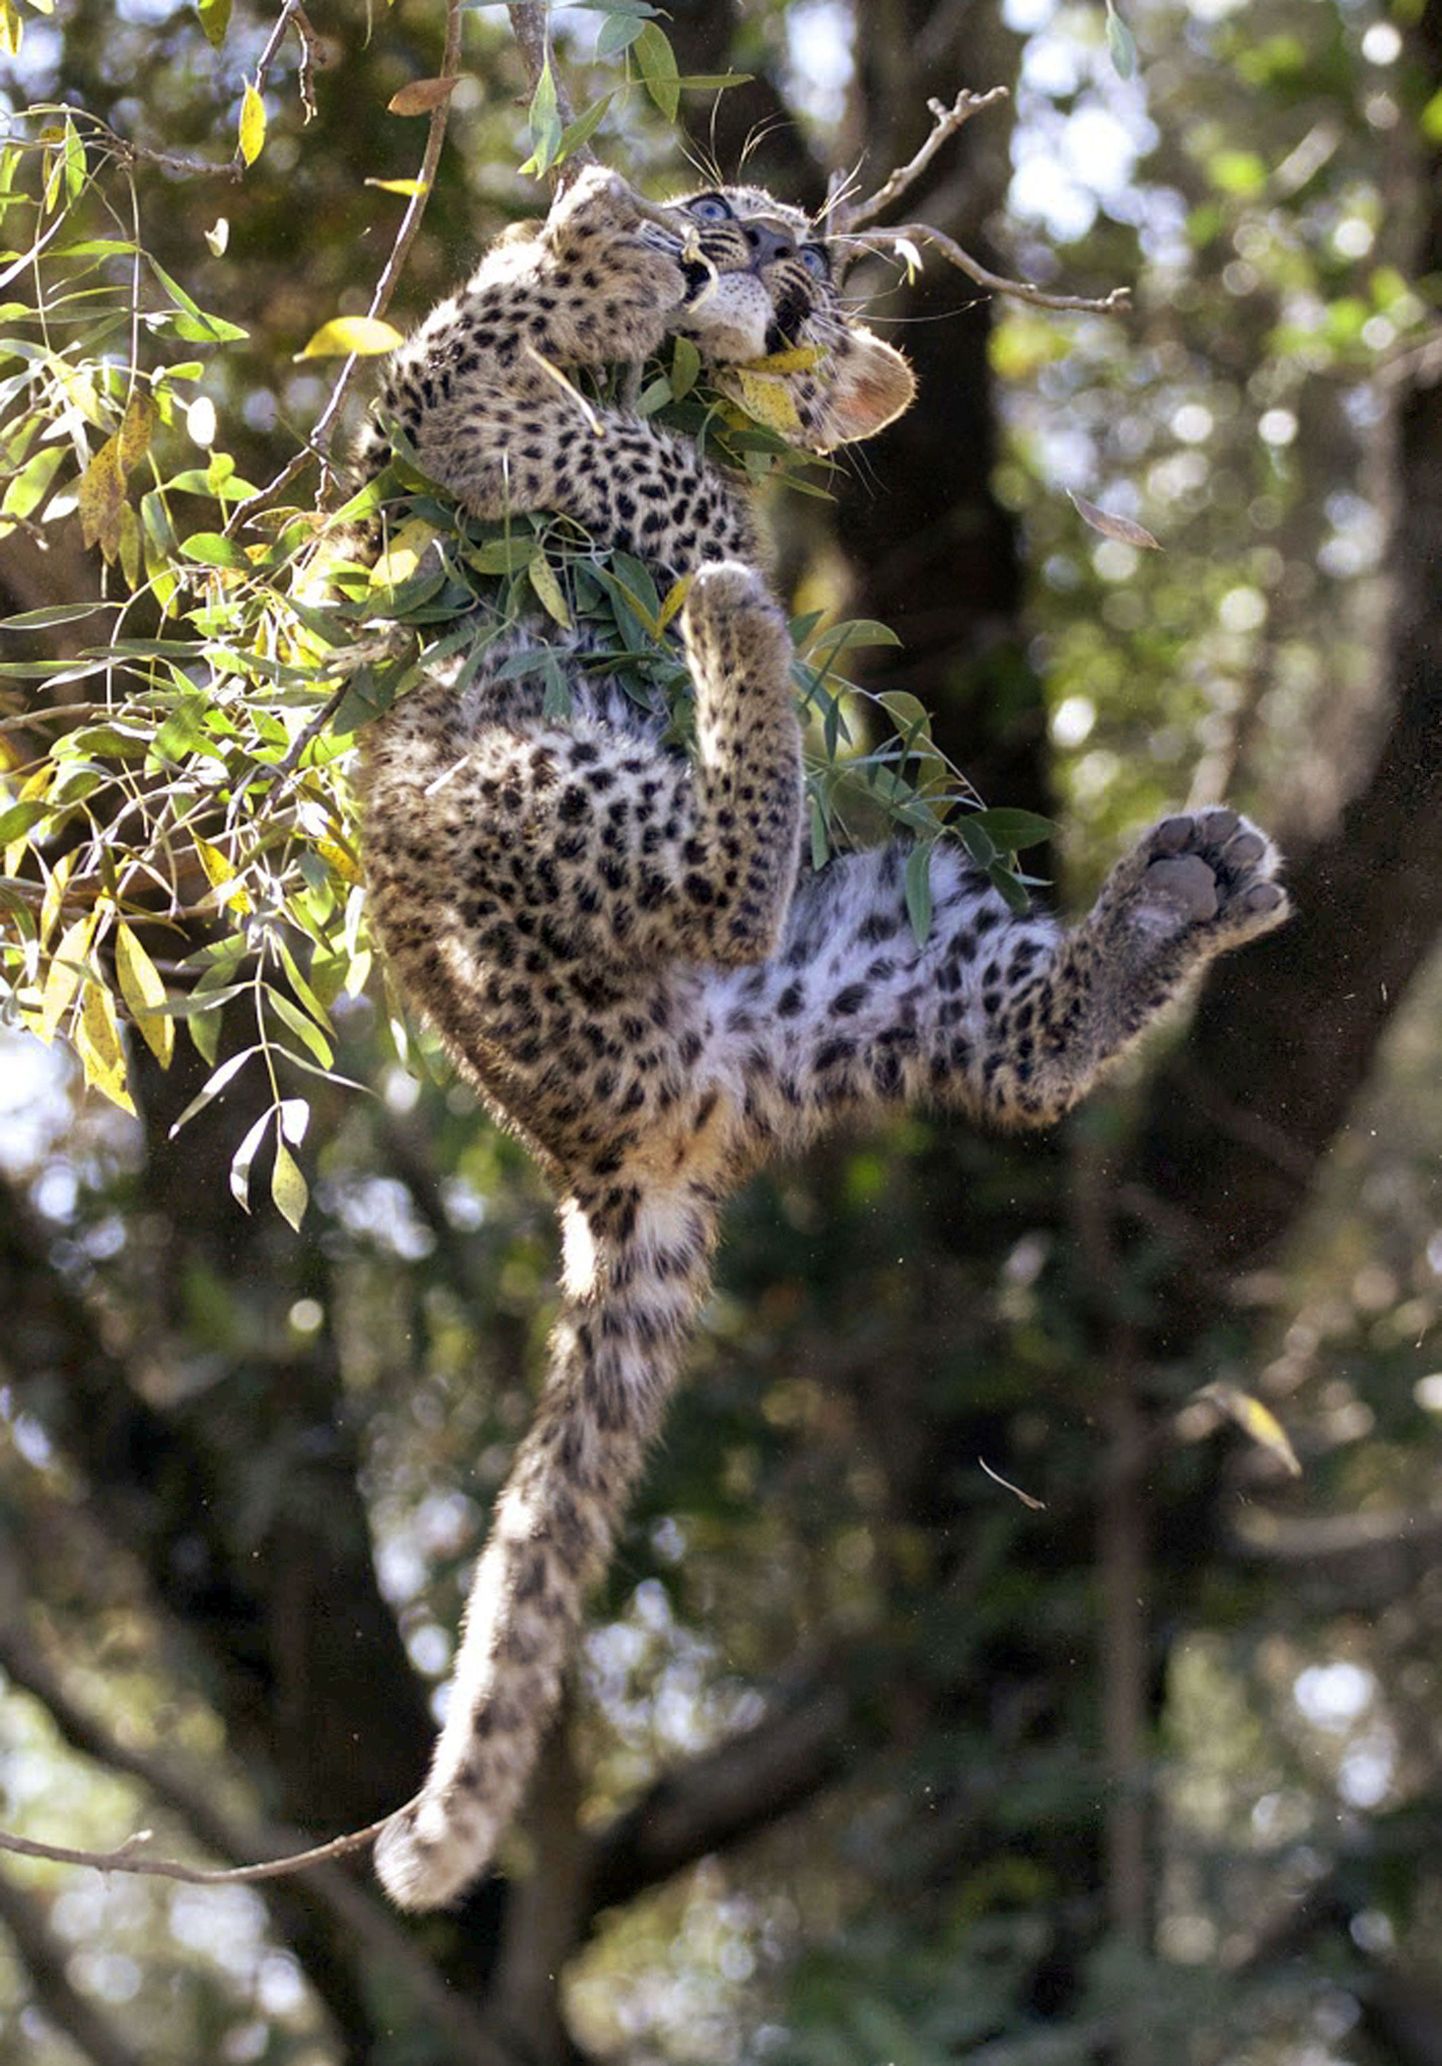 Puuoks andis leopardi raskusele järele ning väike loom vajas abikätt.